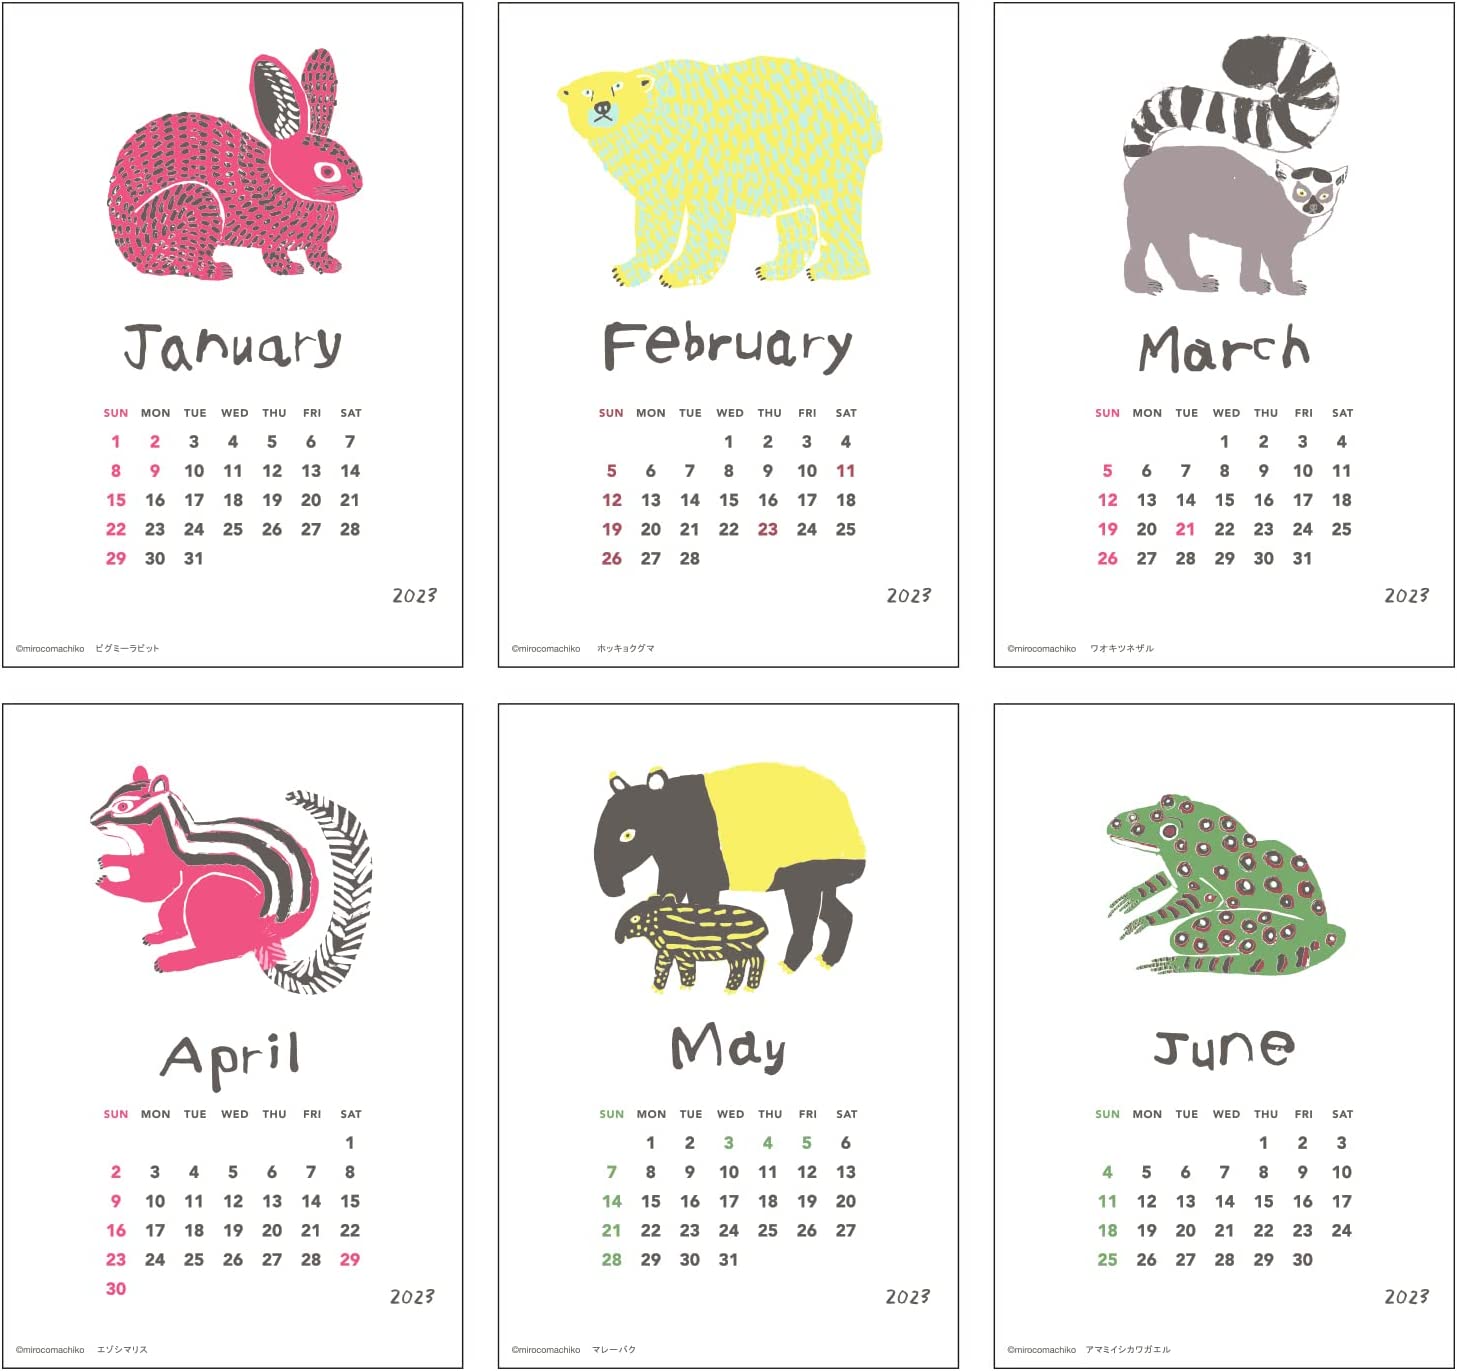 ミロコマチコが描く動物たちを活版印刷で生き生きと表現した、おしゃれな卓上カレンダー2023年版